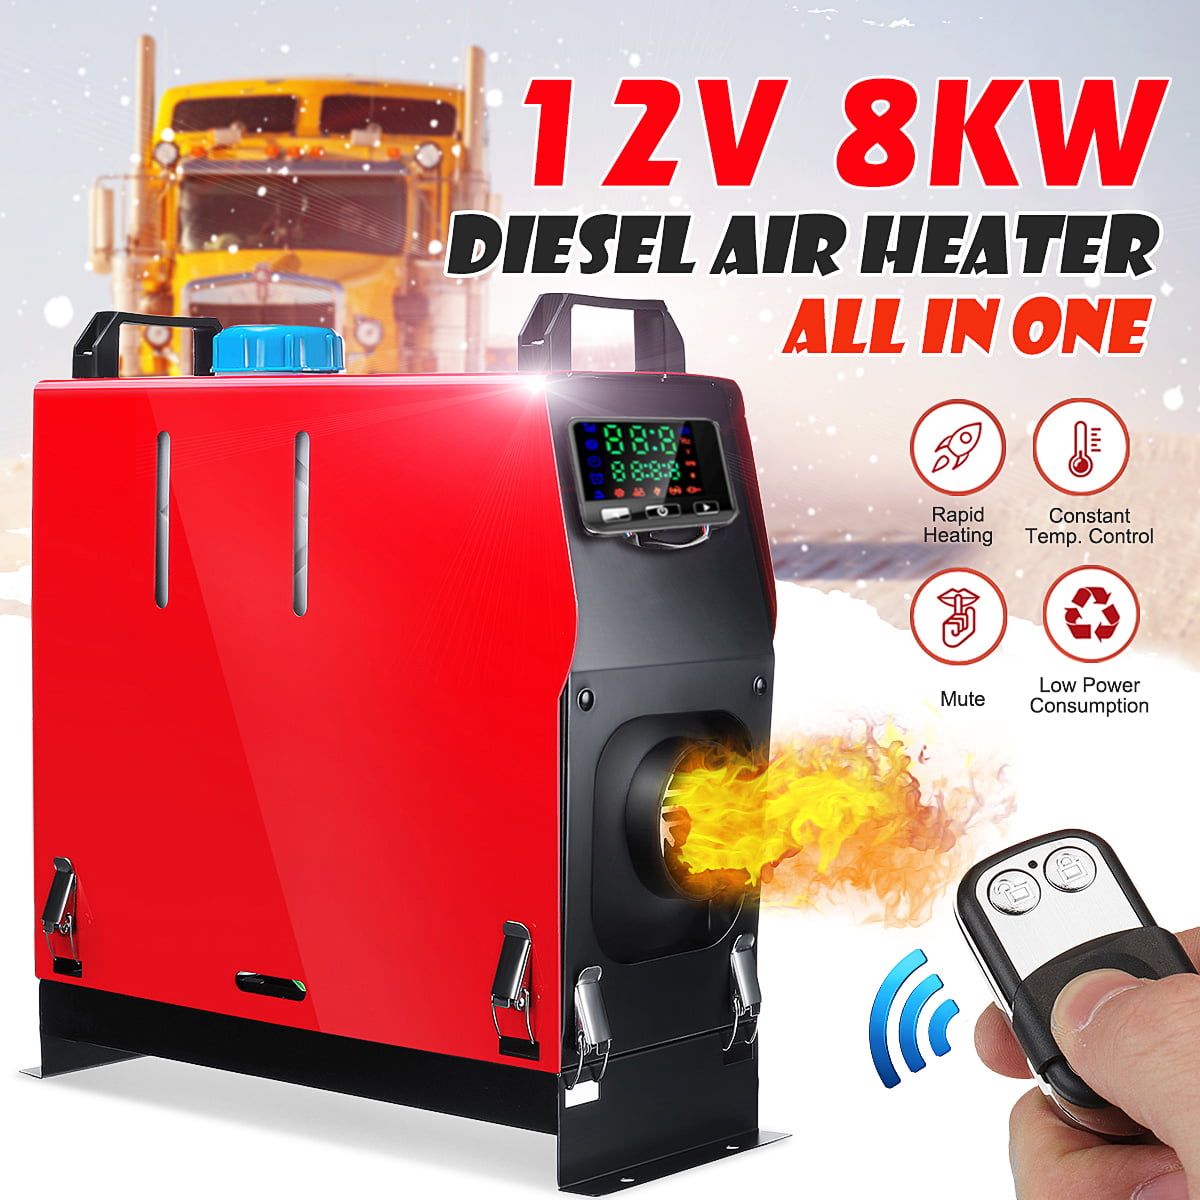 Caravan diesel heater